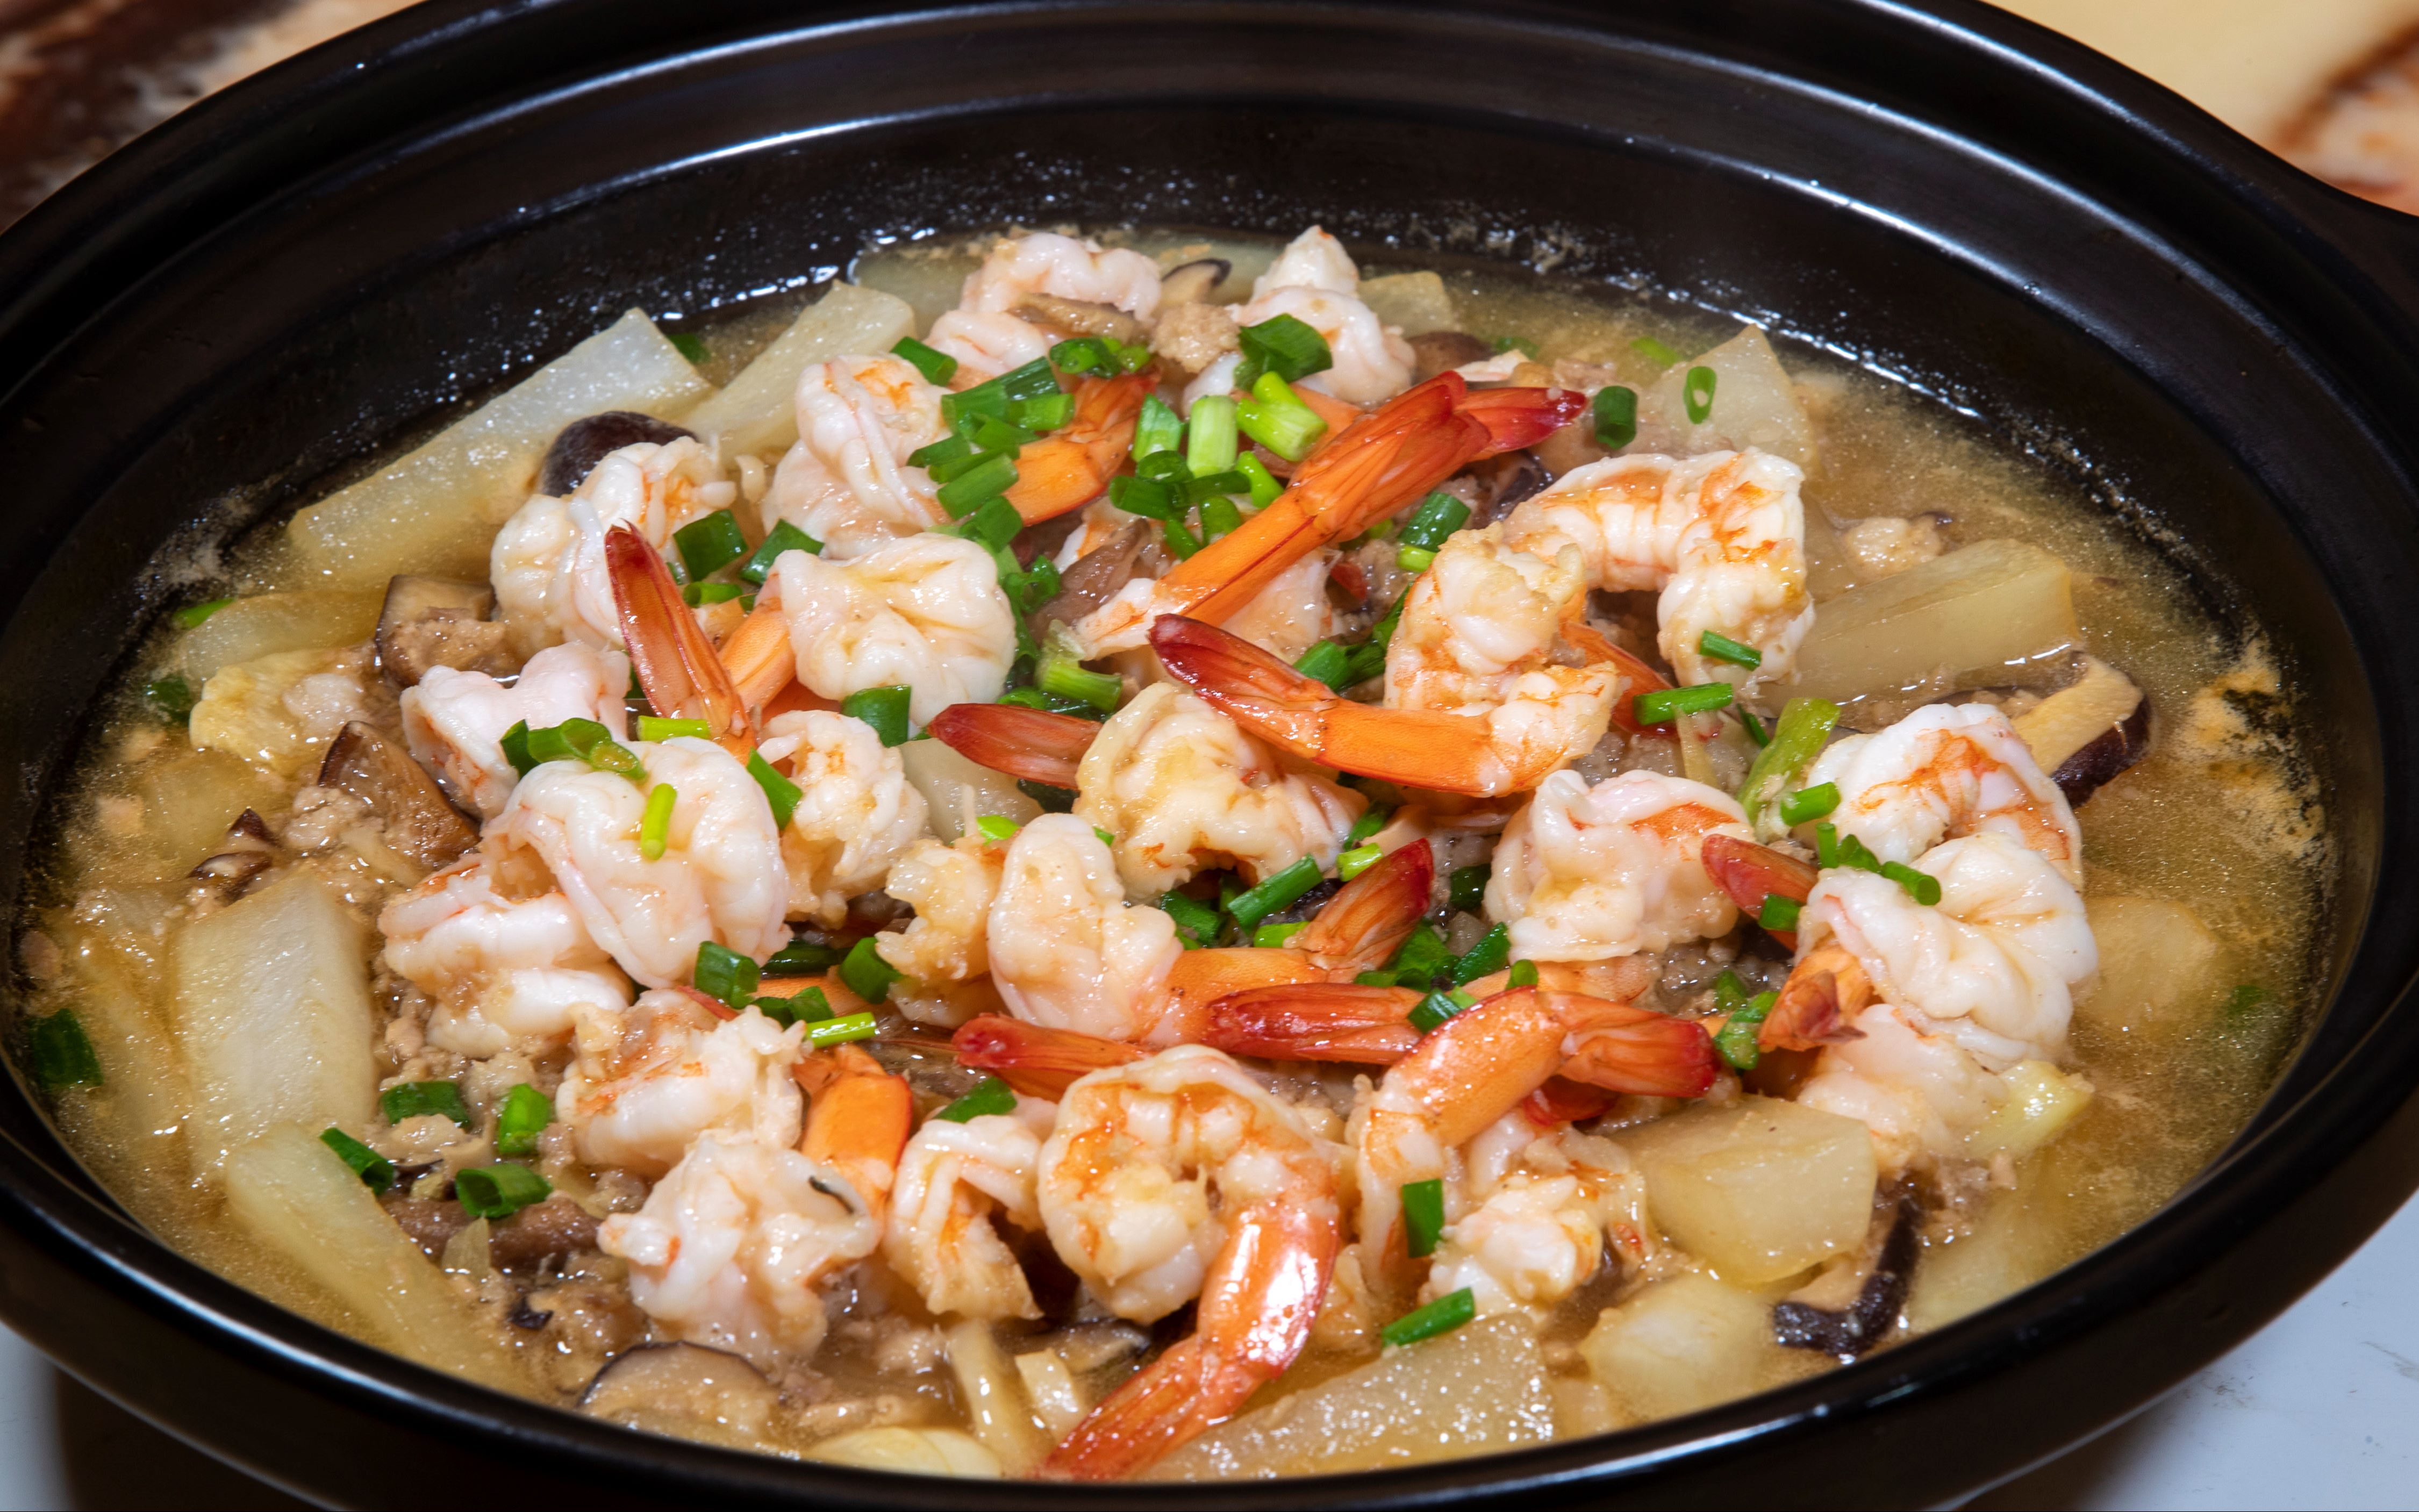 热气腾腾萝卜鲜虾煲,家常海鲜做法非常简单,汤鲜味美冬天的最爱